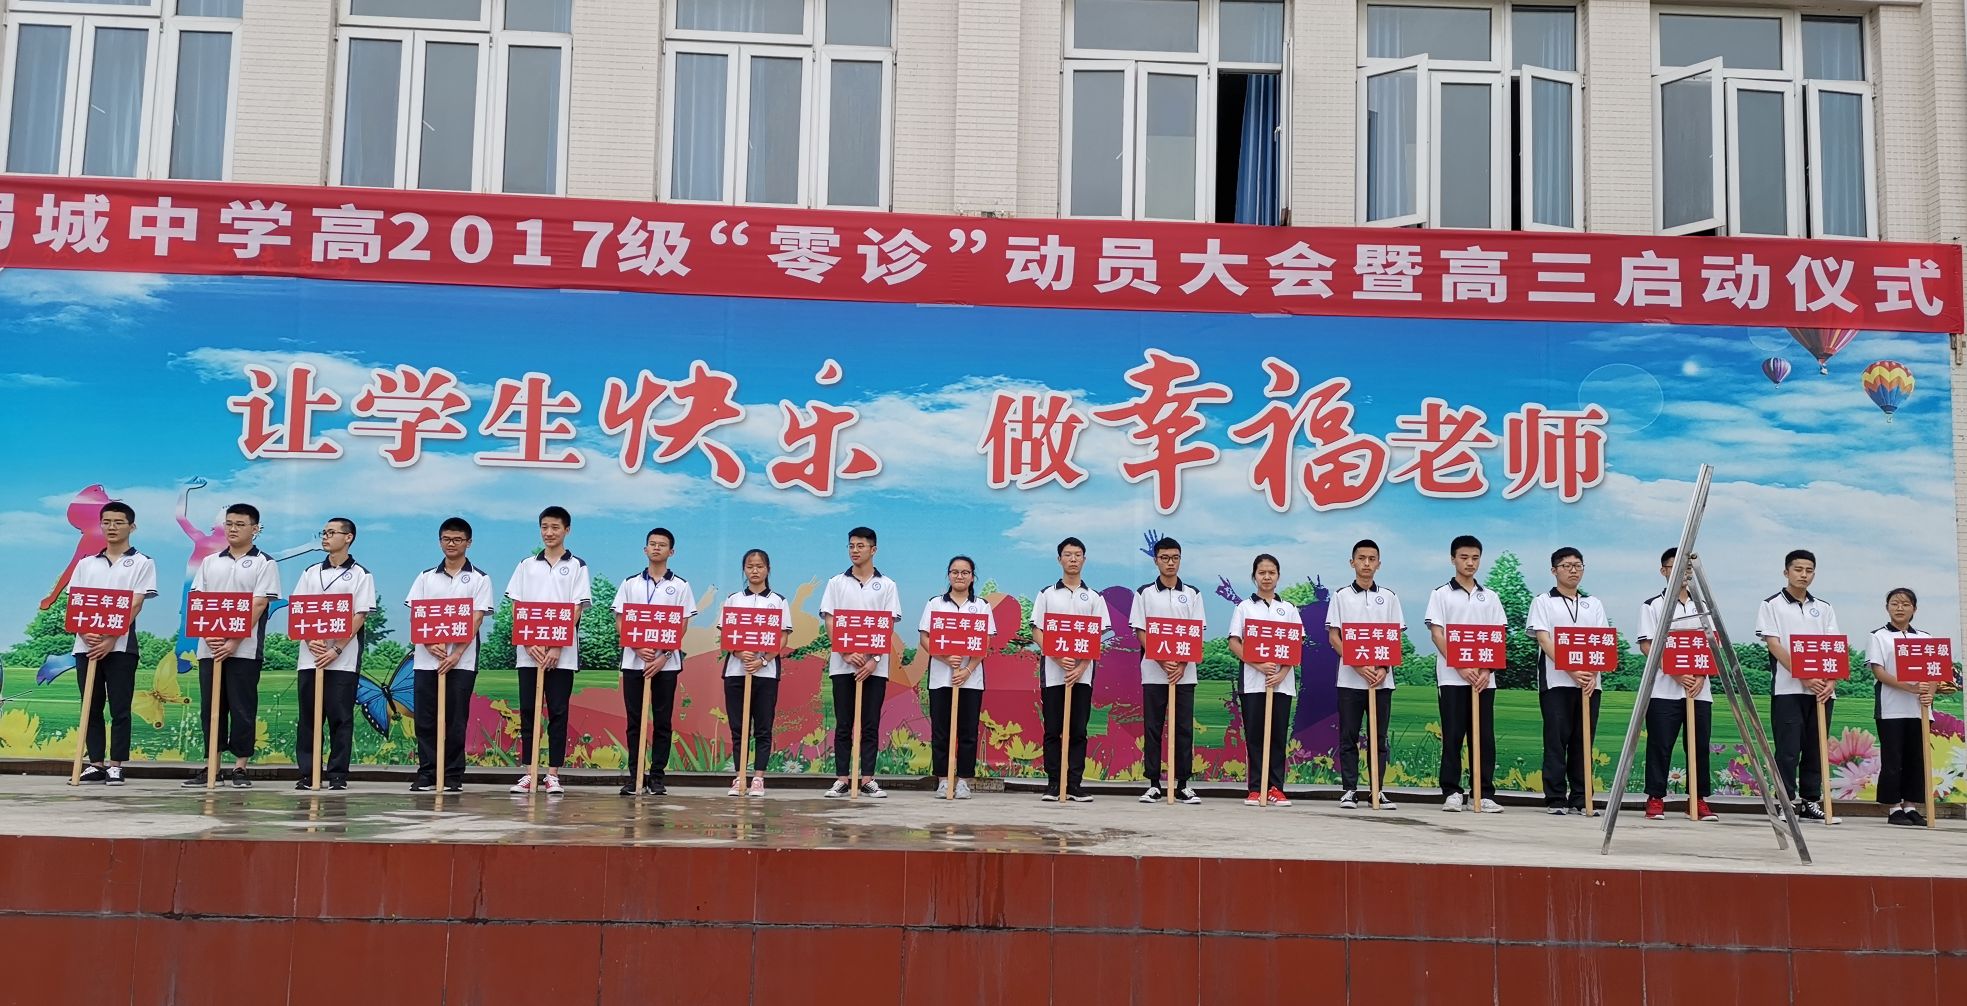 崇州市蜀城中学举行高2017级零诊动员大会暨高三启动仪式